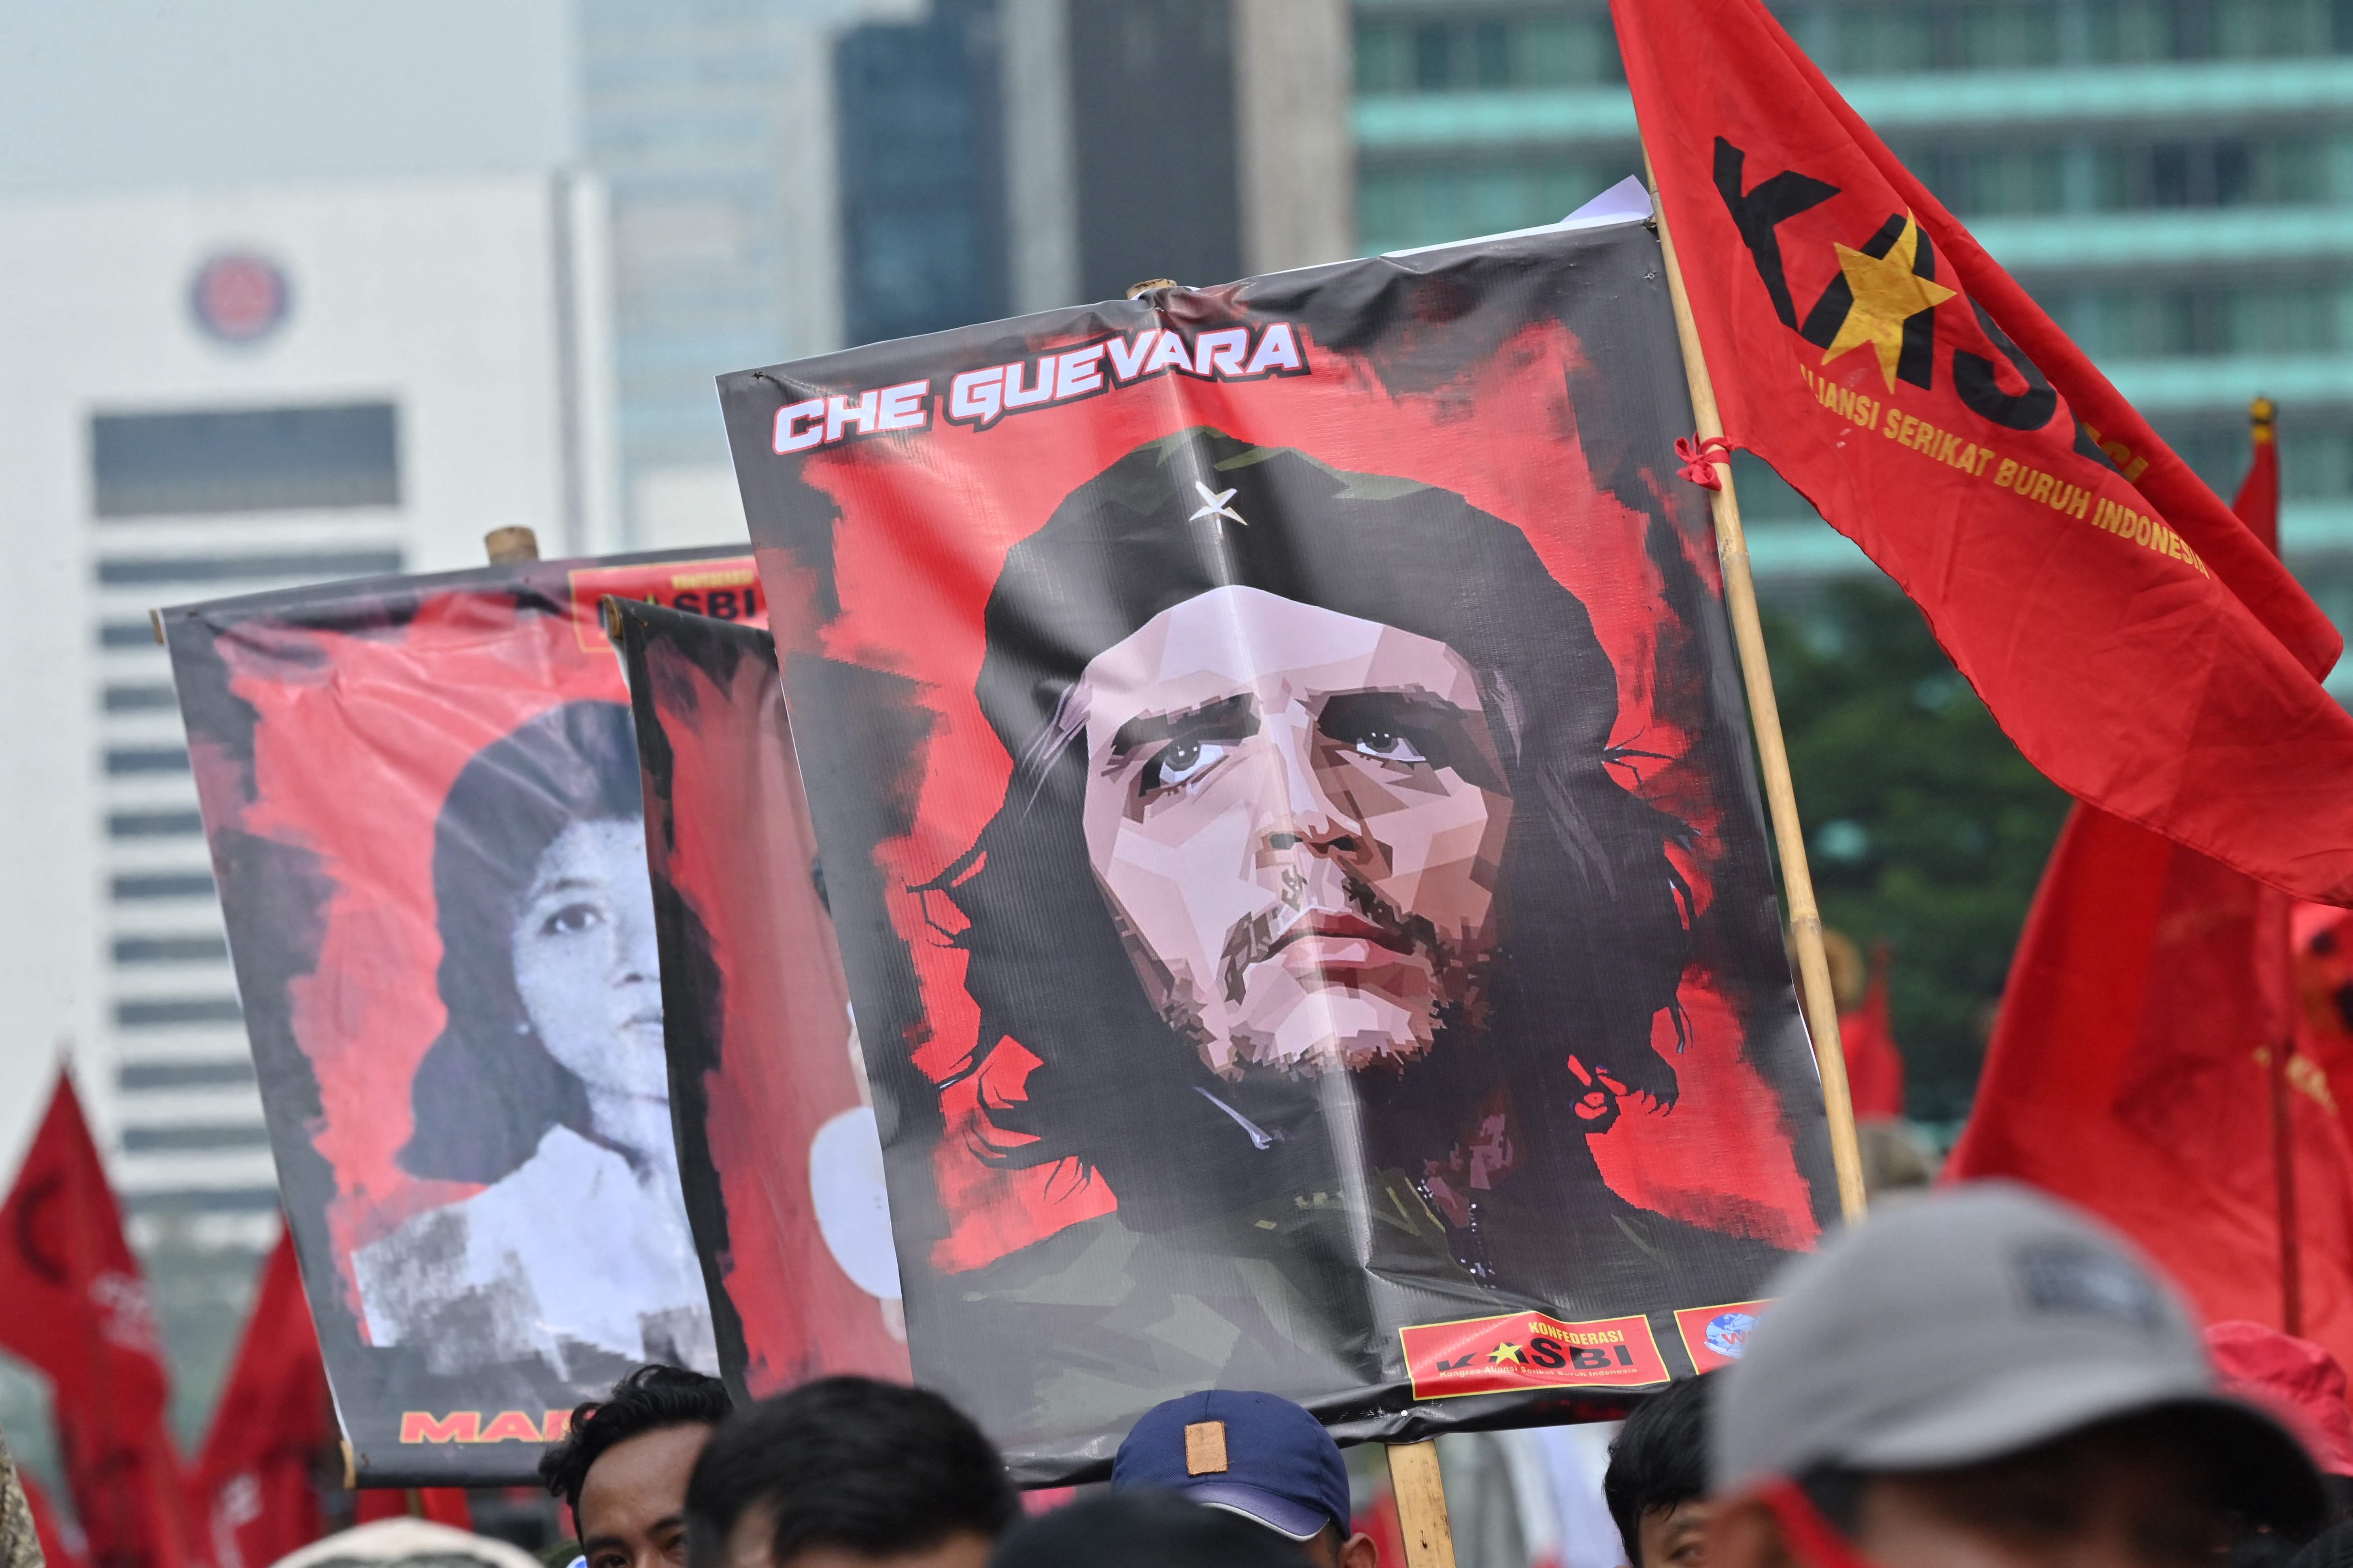 La imagen del Che Guevara es constantemente utilizada durante manifestaciones en distintos puntos de Latinoamérica y otras partes del mundo. (Foto Prensa Libre: Adek Berry / EFE)